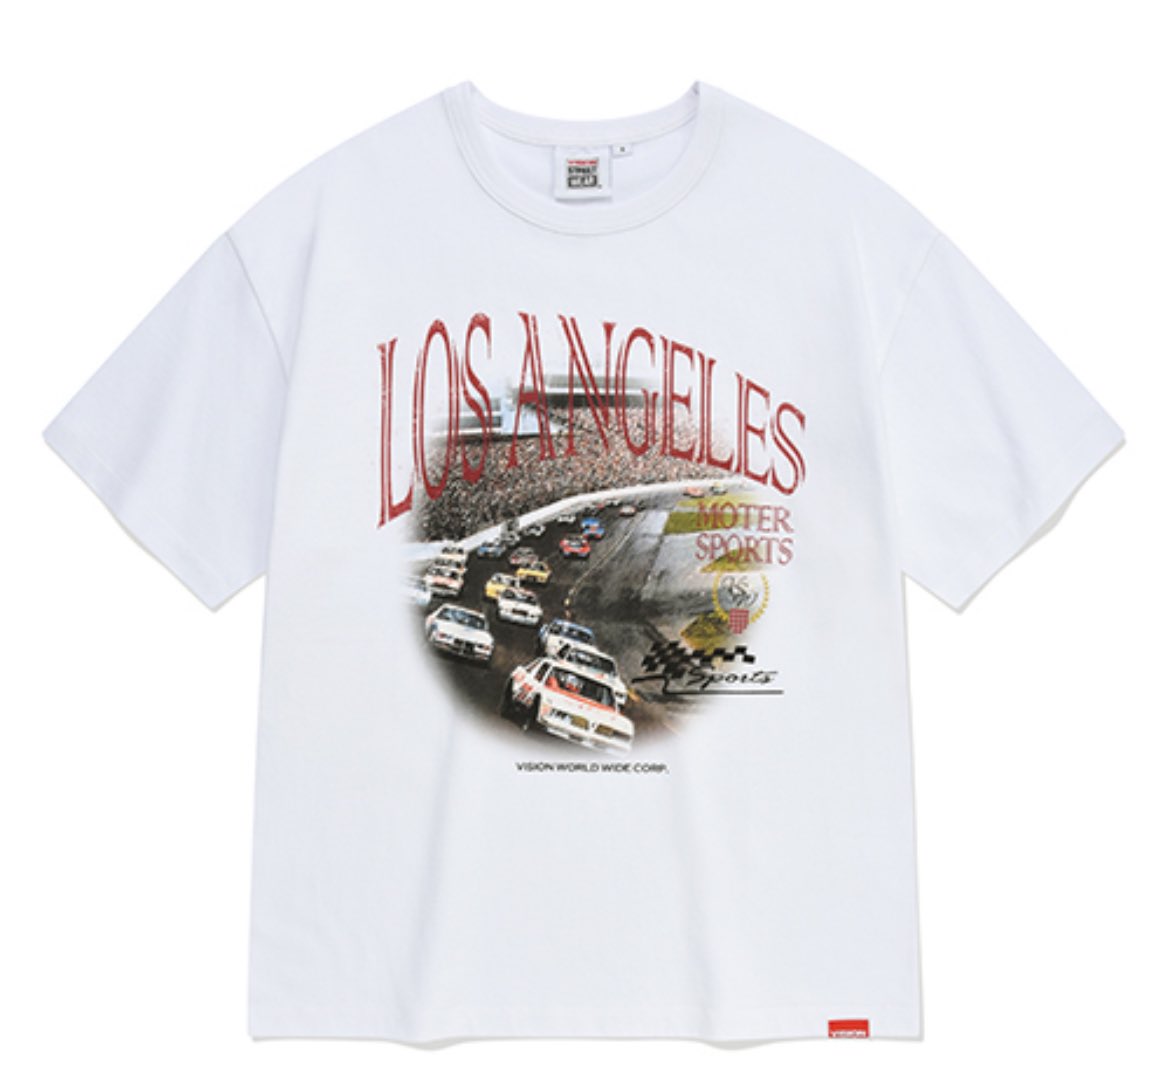 오늘도 무신사미 낭낭한 고양이 

VSW Los Angeles Racing T-Shirts White
musinsaapp.page.link/1Kv6RtZ3Cd2o4u…